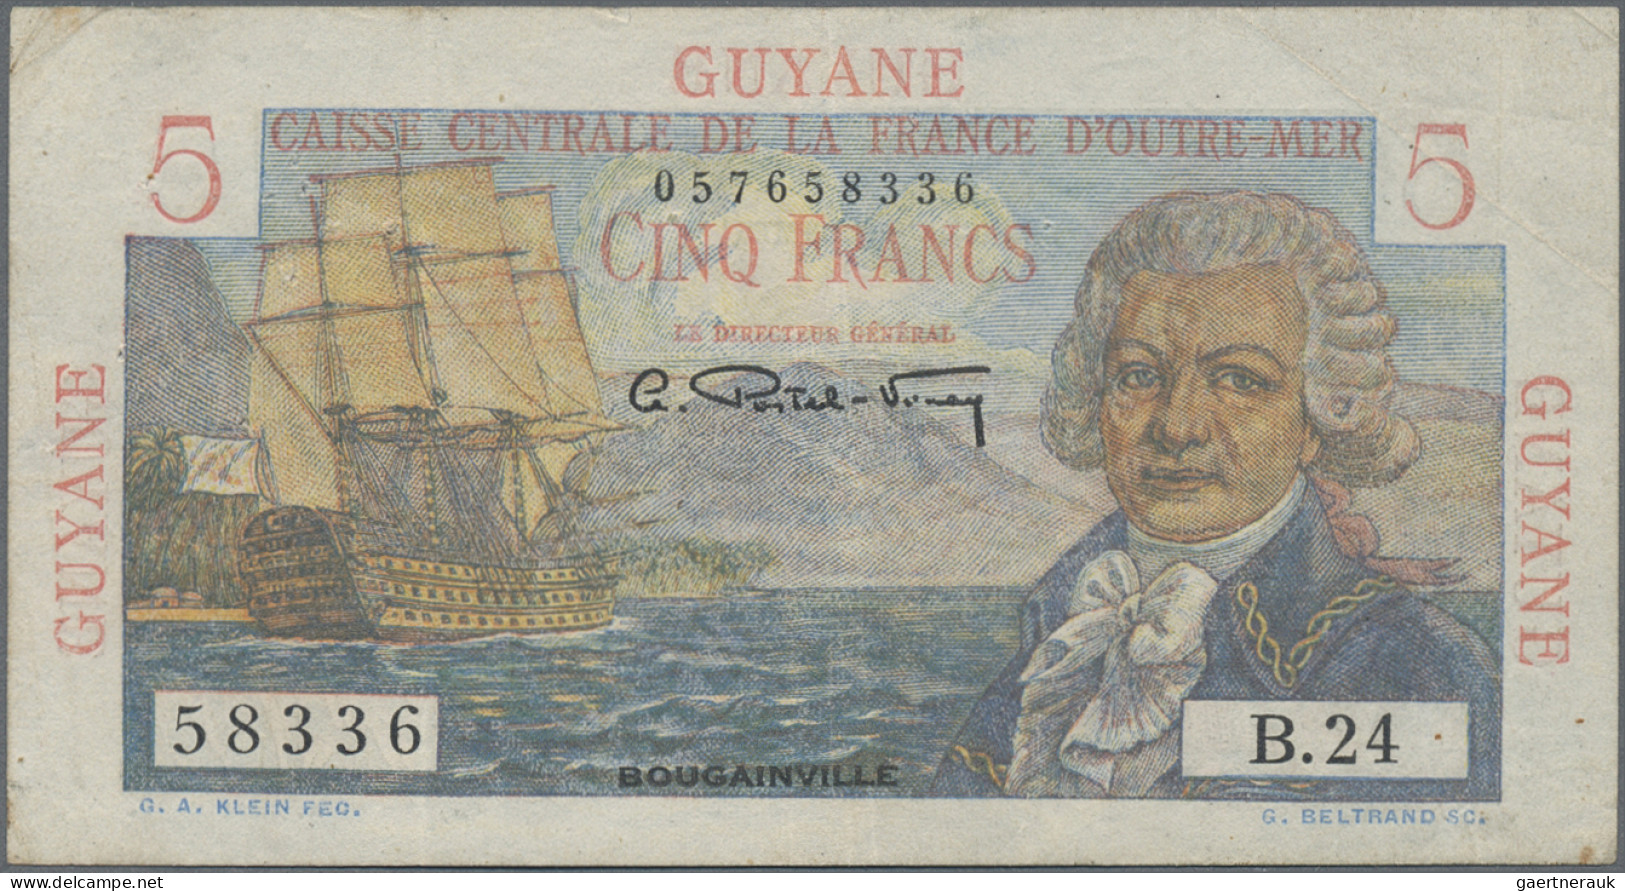 French Guiana: Banque De La Guyane And Caisse Centrale De La France D'Outre-Mer - French Guiana